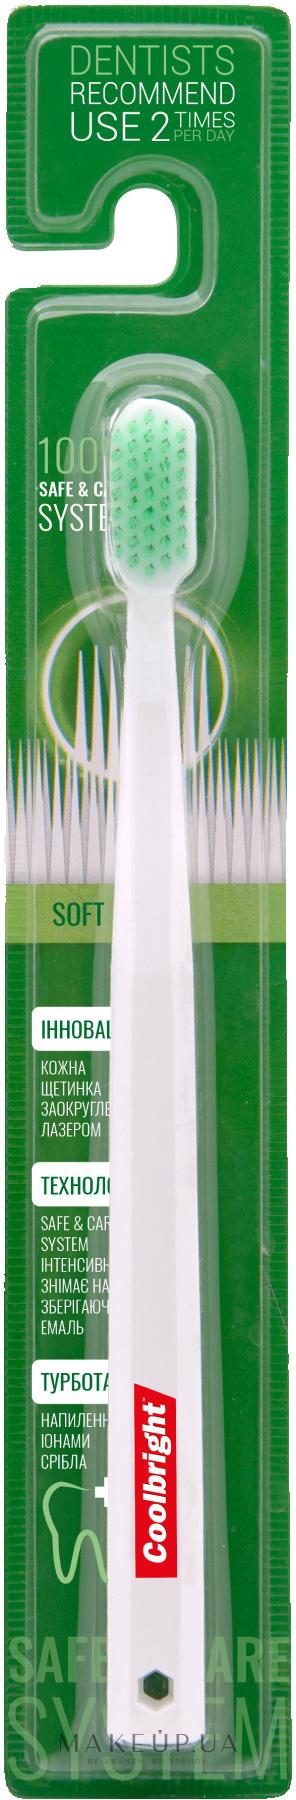 Зубная щетка Coolbright Safe&Care Soft